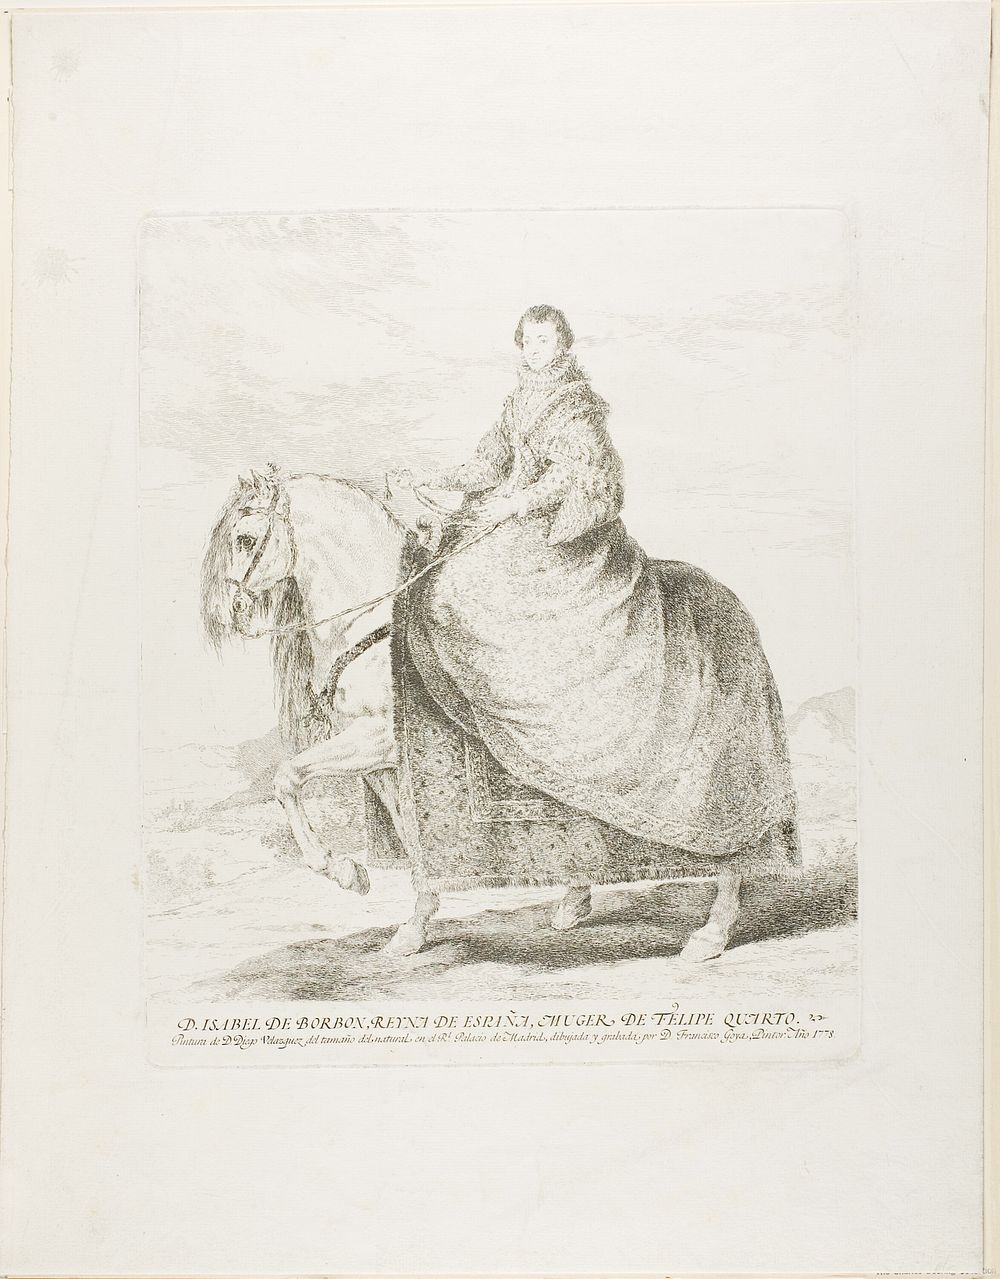 Isabel de Borbon by Francisco José de Goya y Lucientes